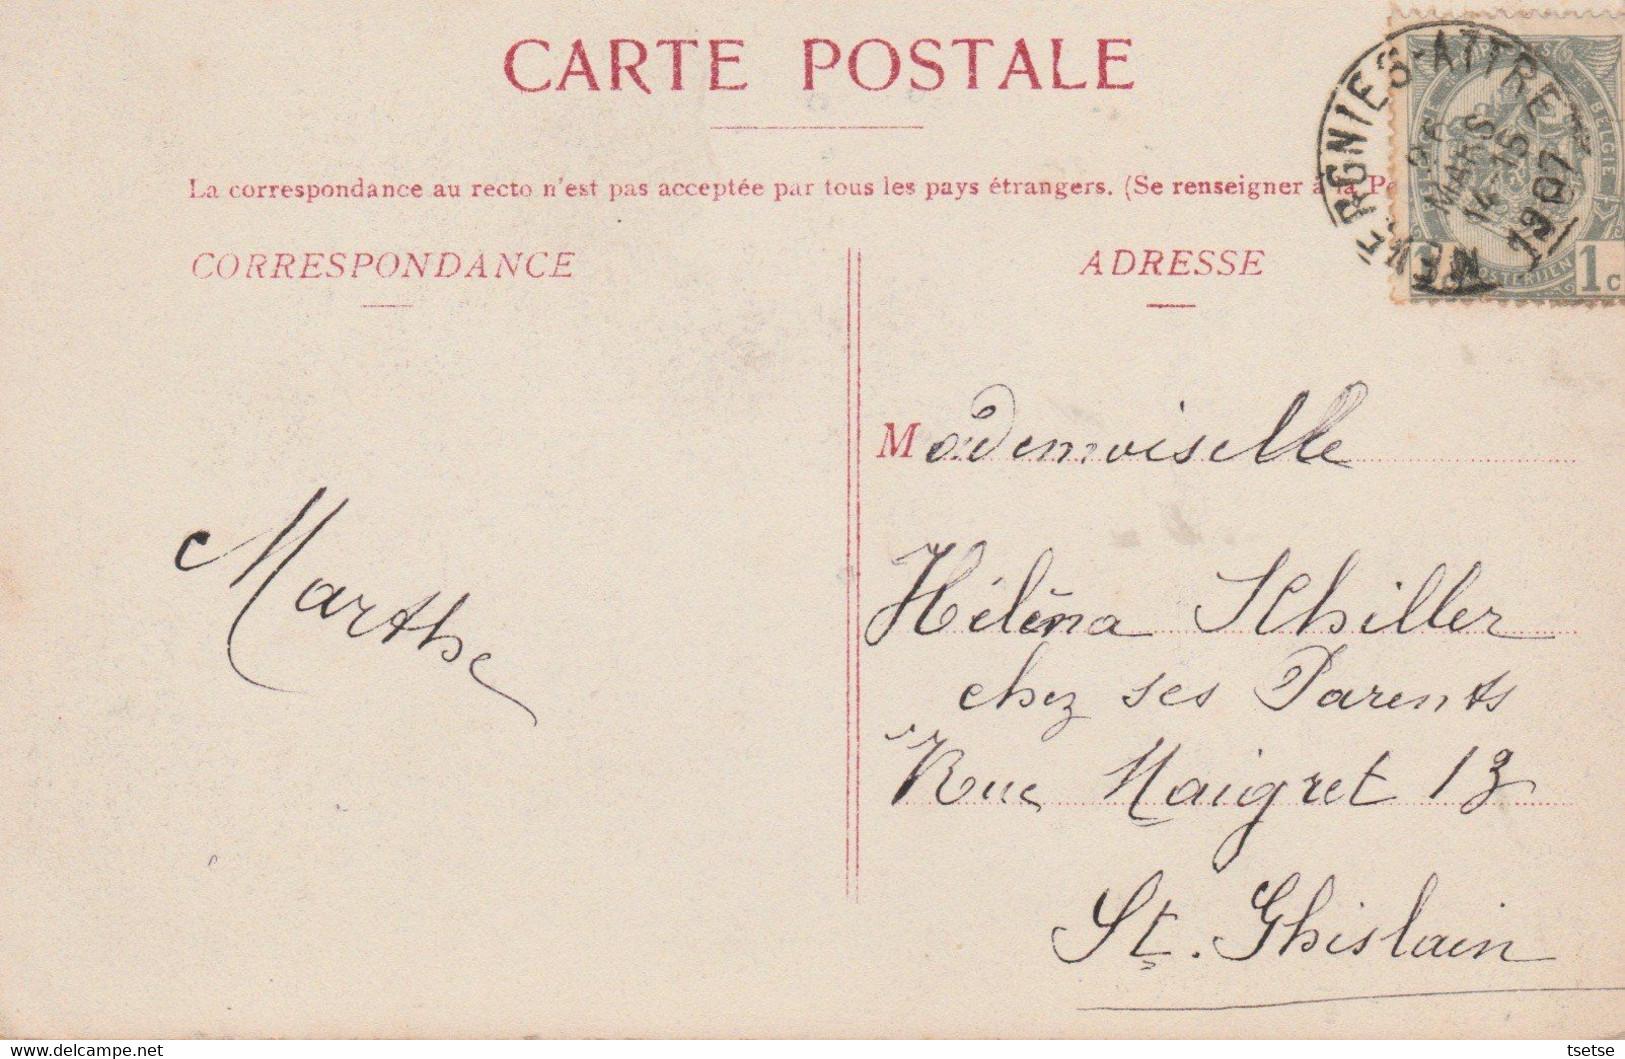 Tongre-Notre-Dame - Eglise , Vue Du Canal - 1907 ( Voir Verso ) - Chievres